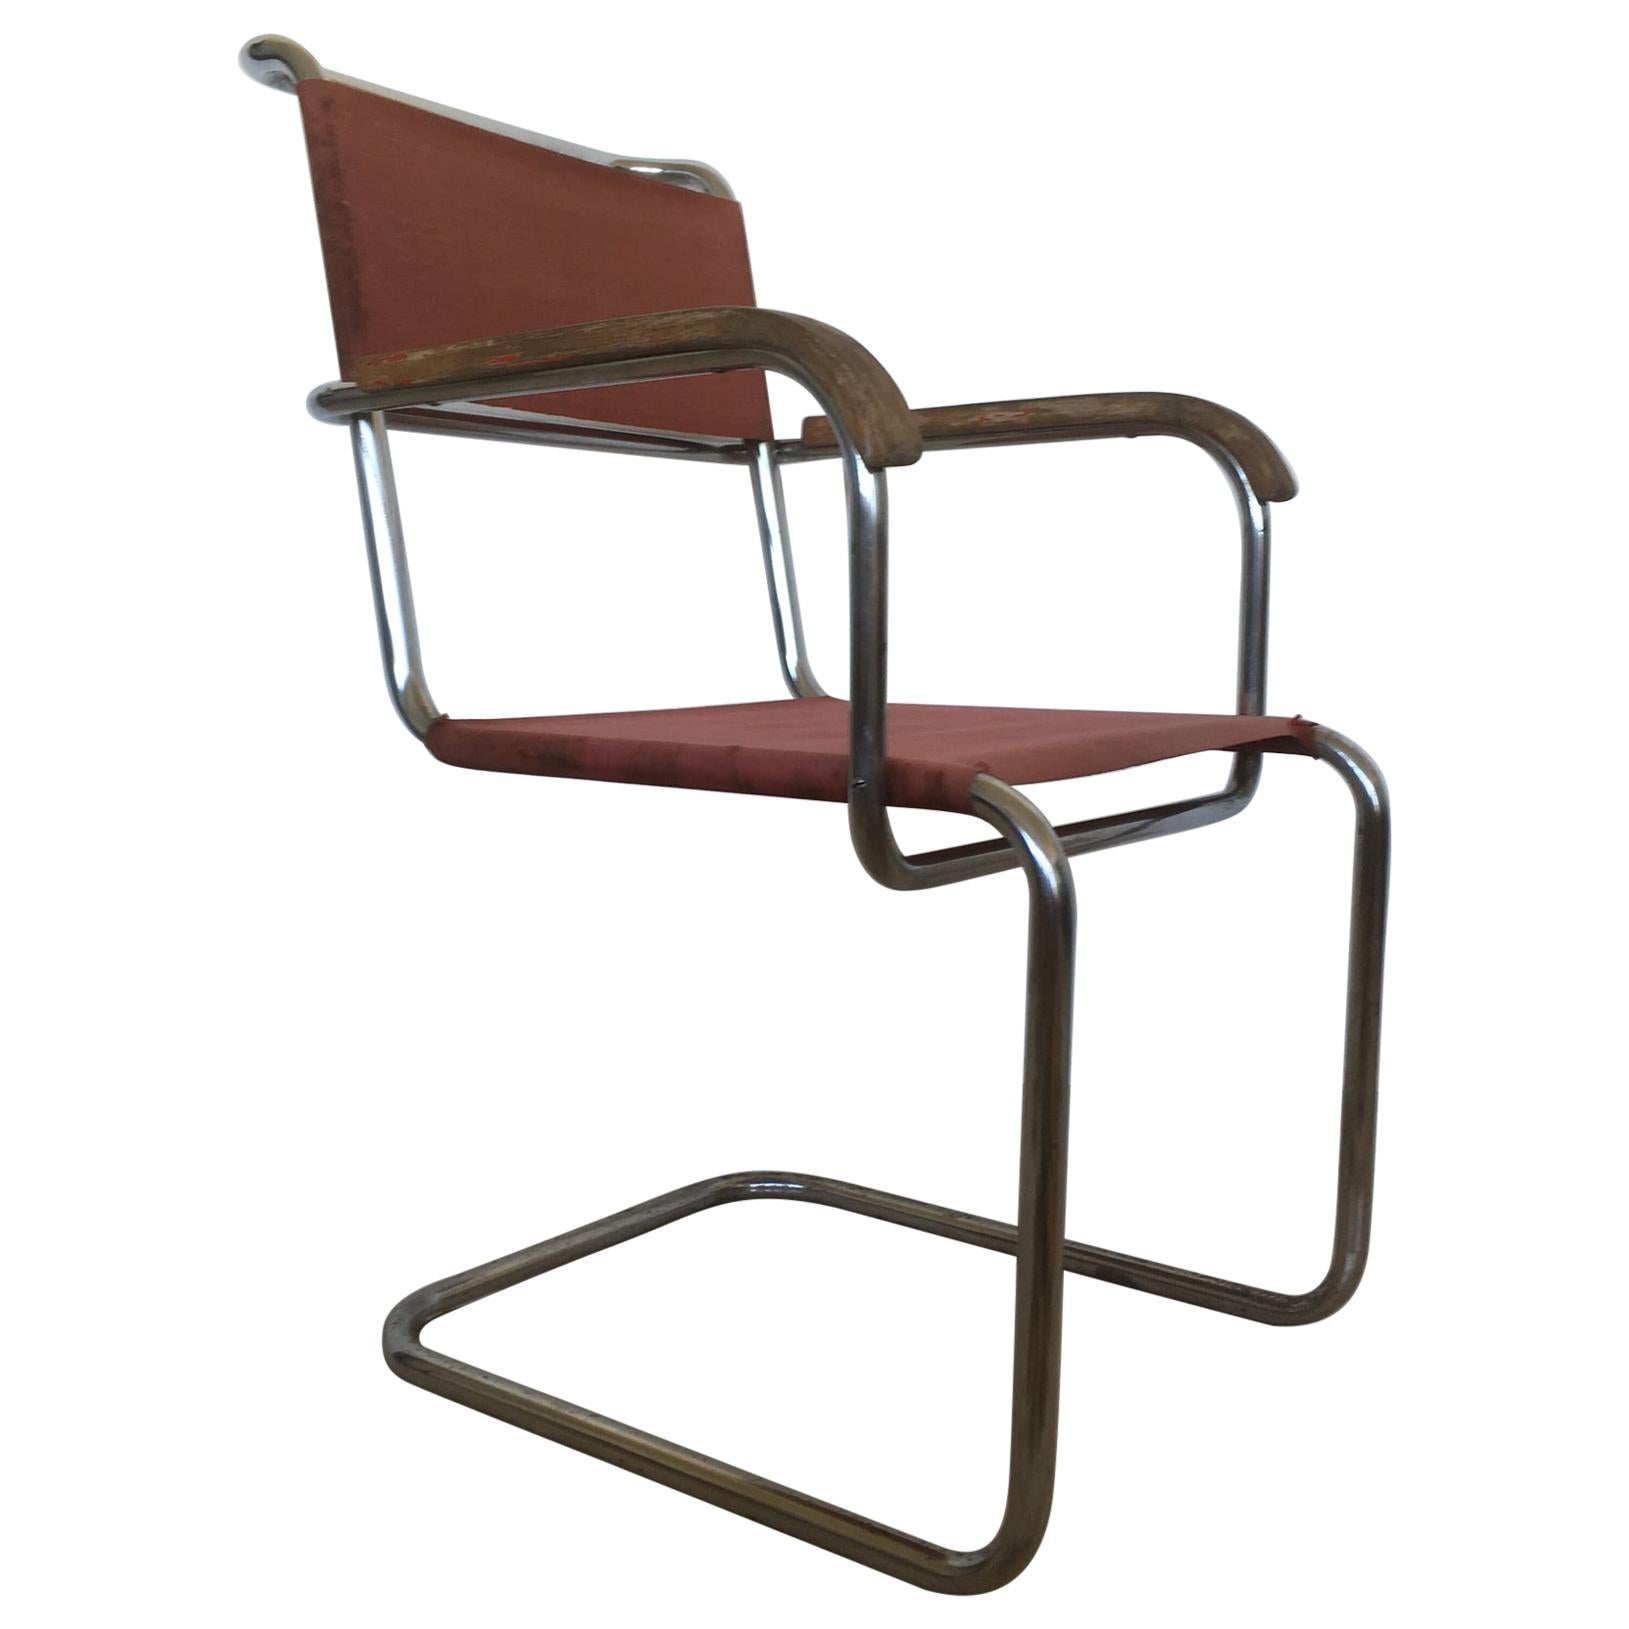 Very Rare Tubular Steel Bauhaus Chrome Chair, 1930s For Sale